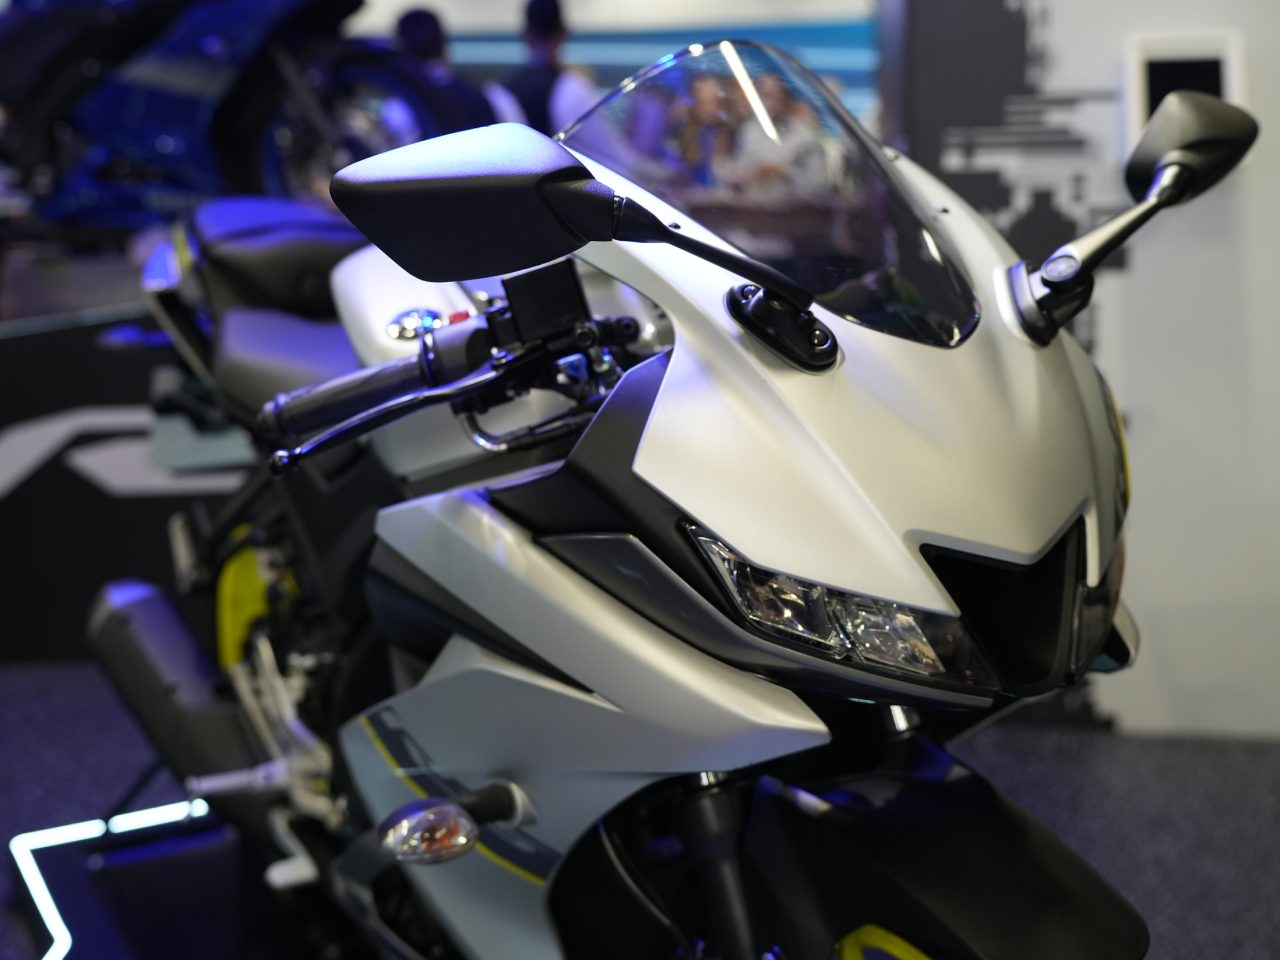 5 motos esportivas 'baratas' ao preço de Lander 250 0km - MOTOO